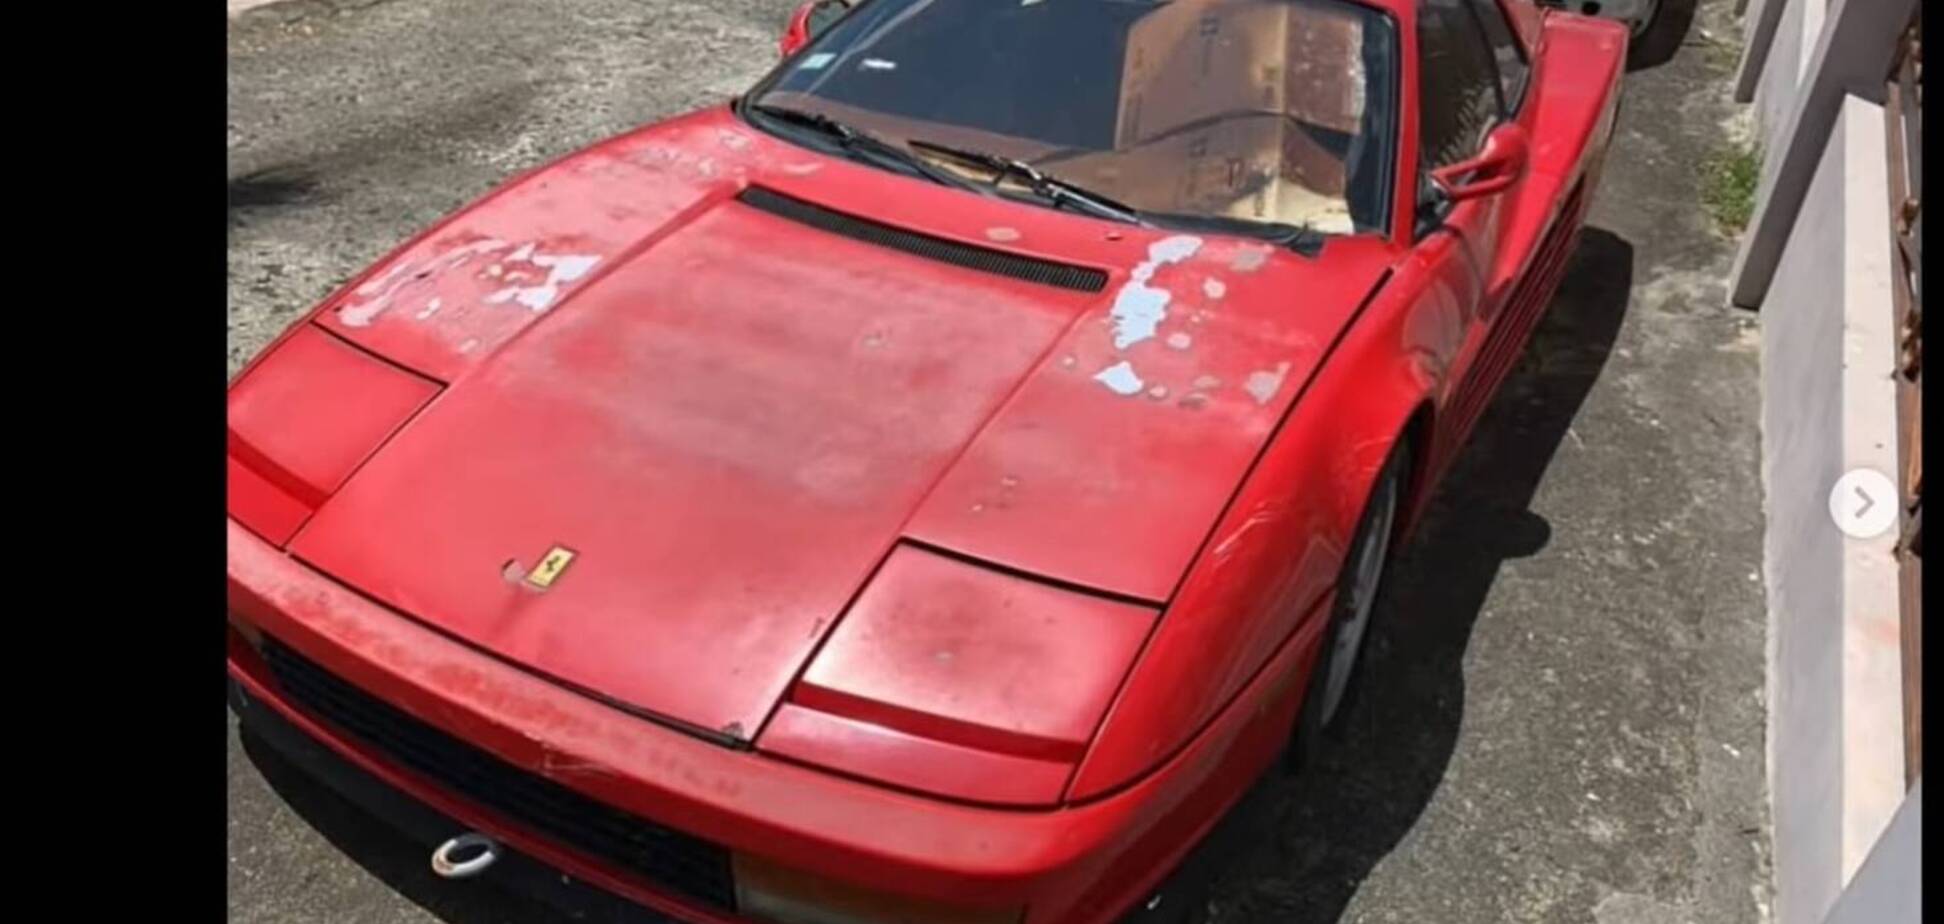 Ексклюзивна Ferrari простояла покинутою біля дороги 17 років